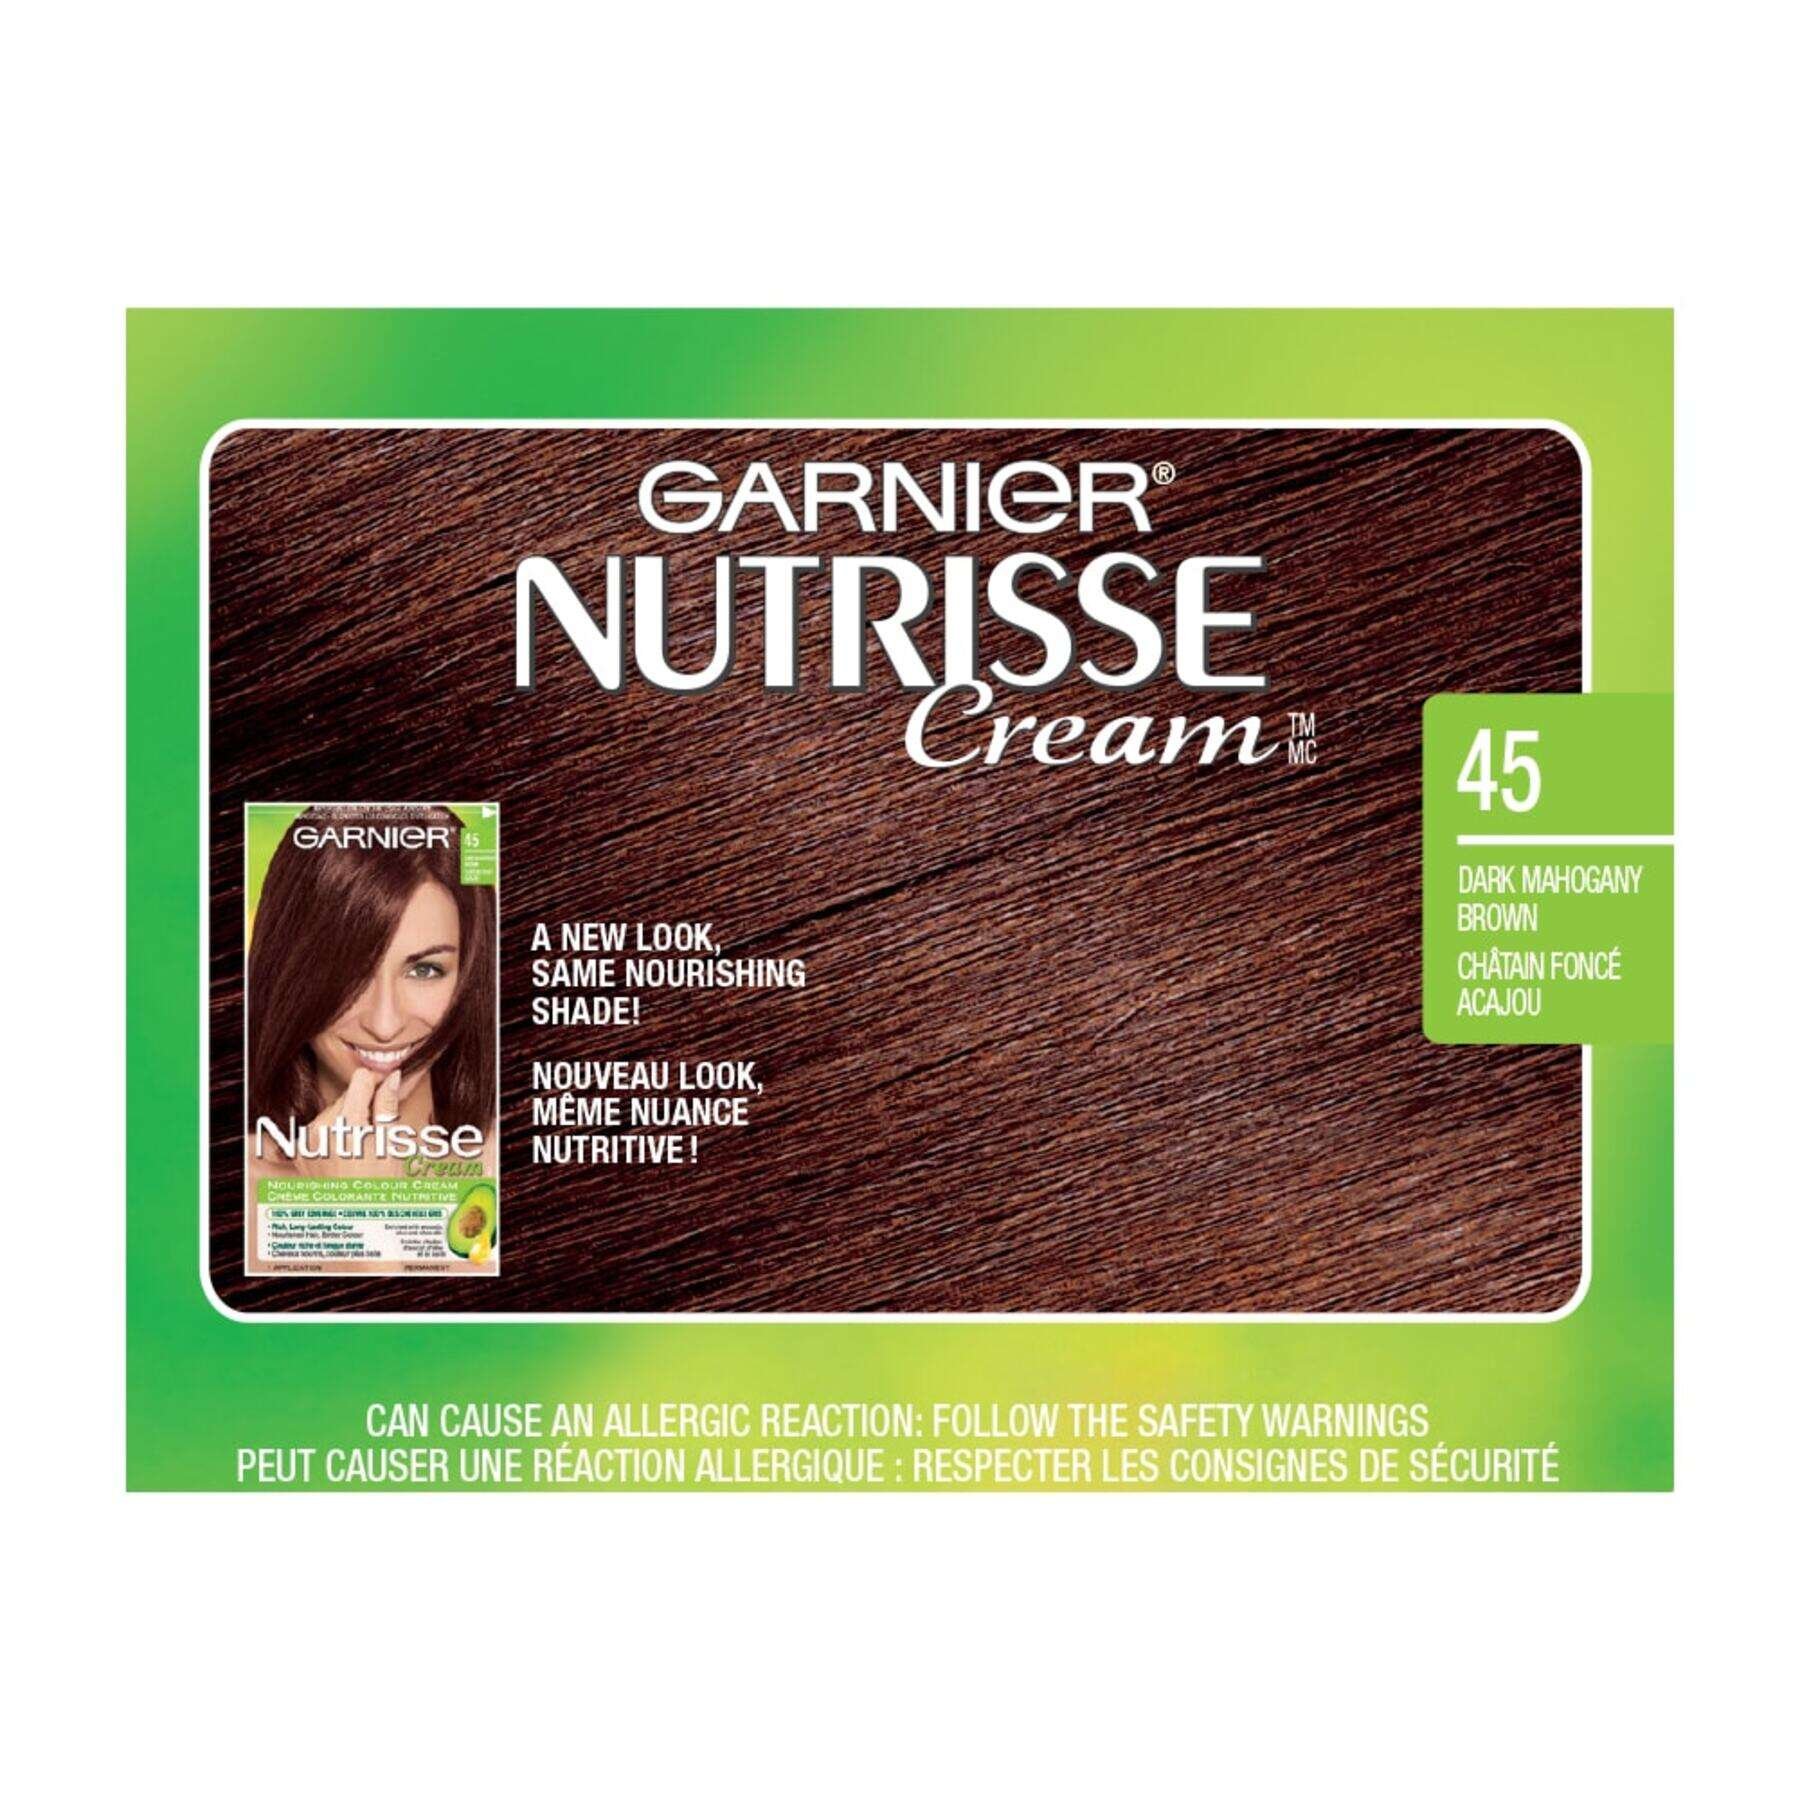 garnier hair dye nutrisse cream 45 dark mahogany brown 0770103447070 swatch